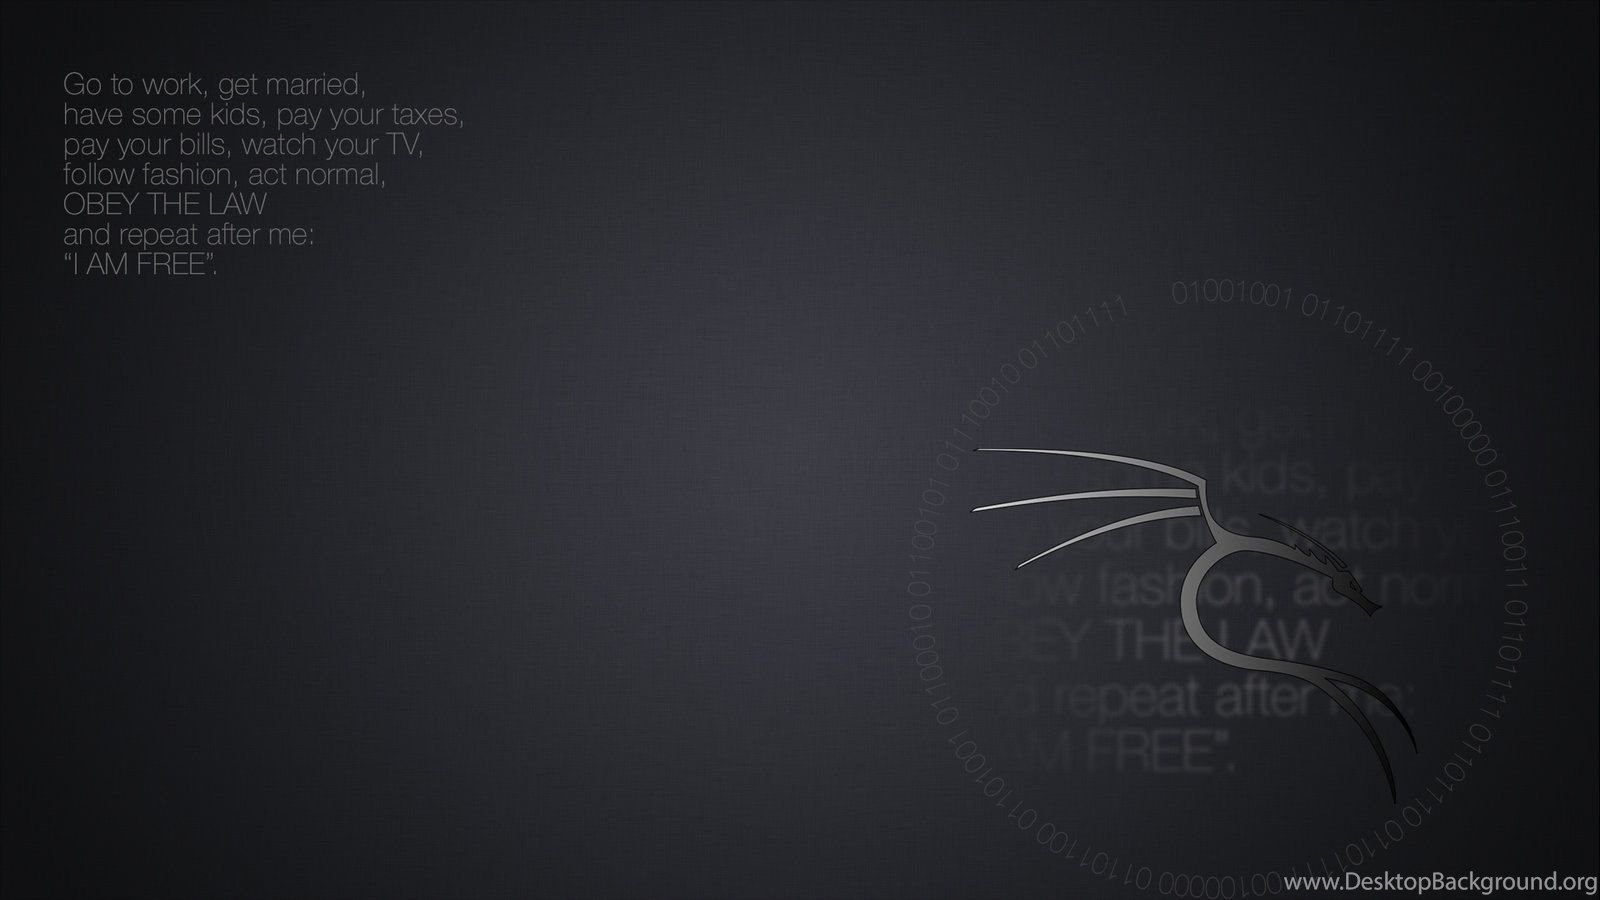 Kali Linux Wallpaper 'I Am Free' Desktop Background